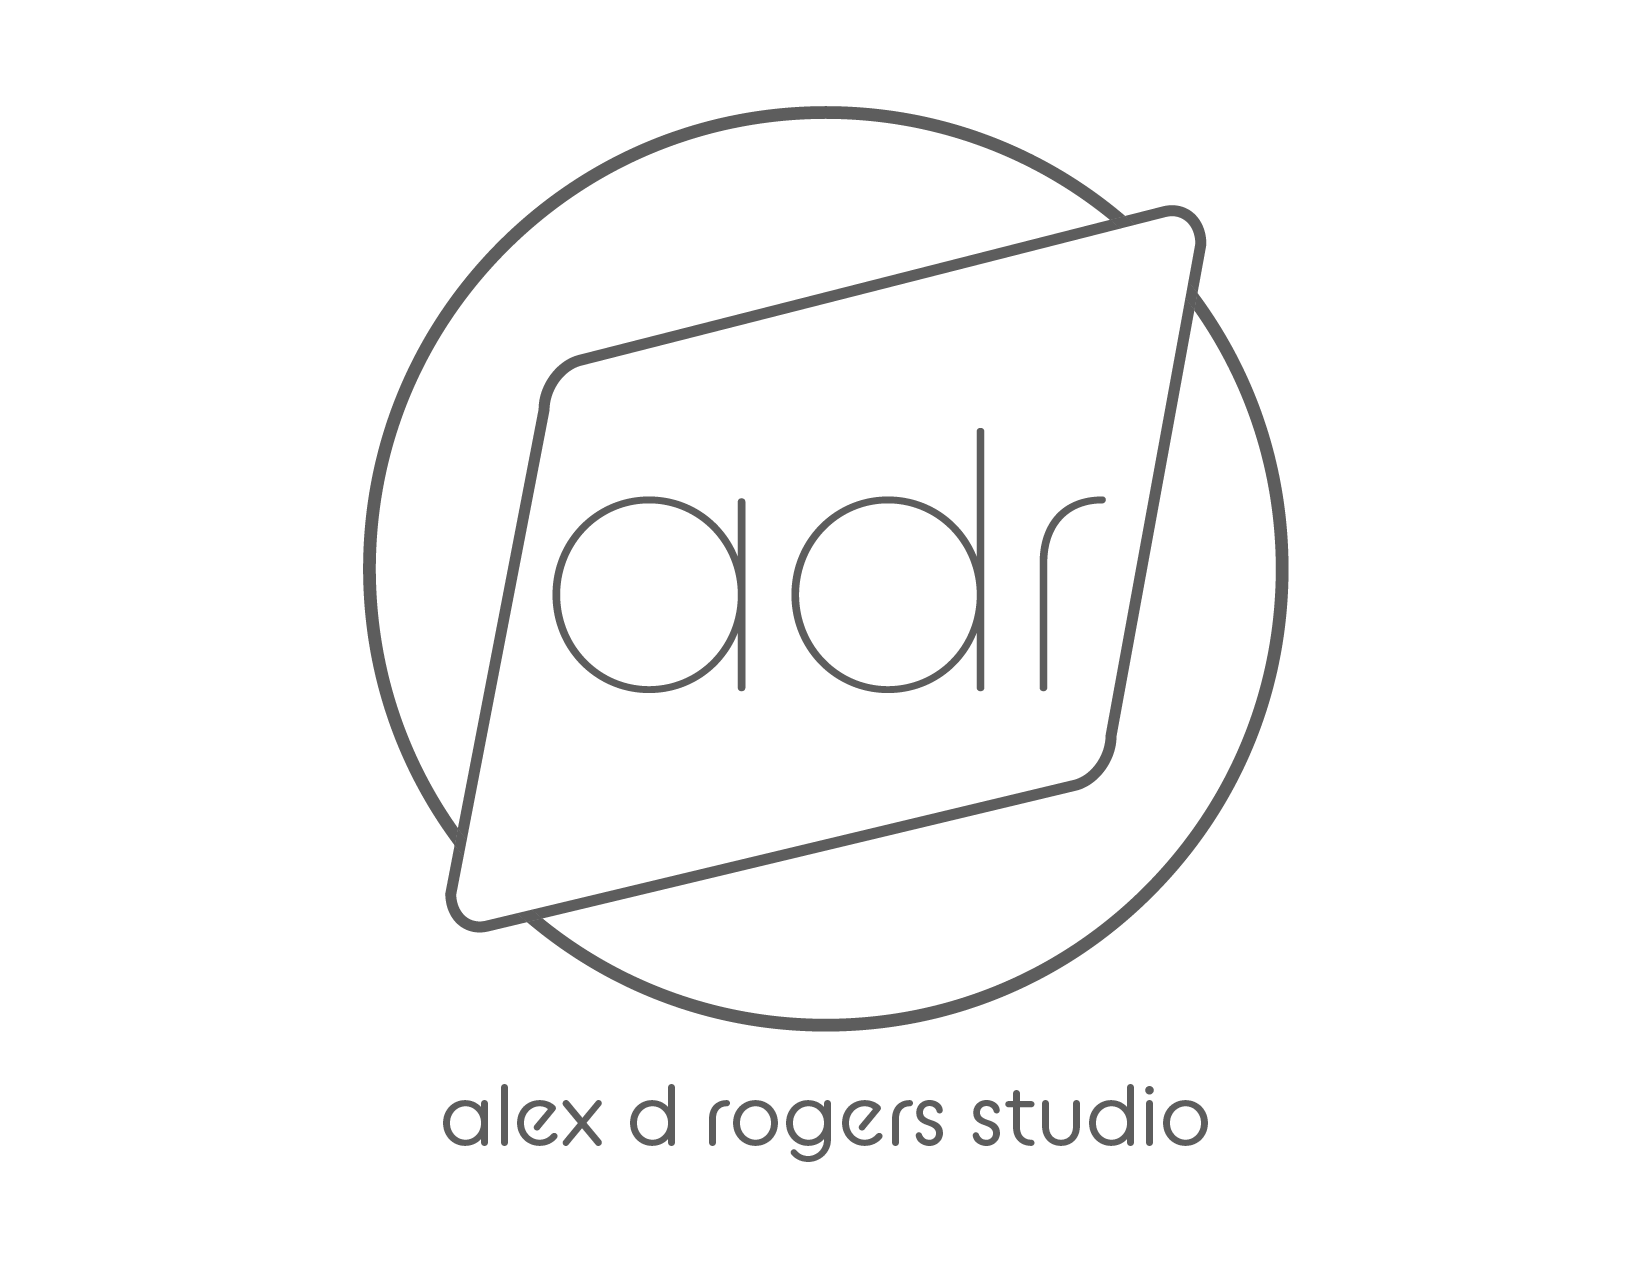 alex d rogers studio